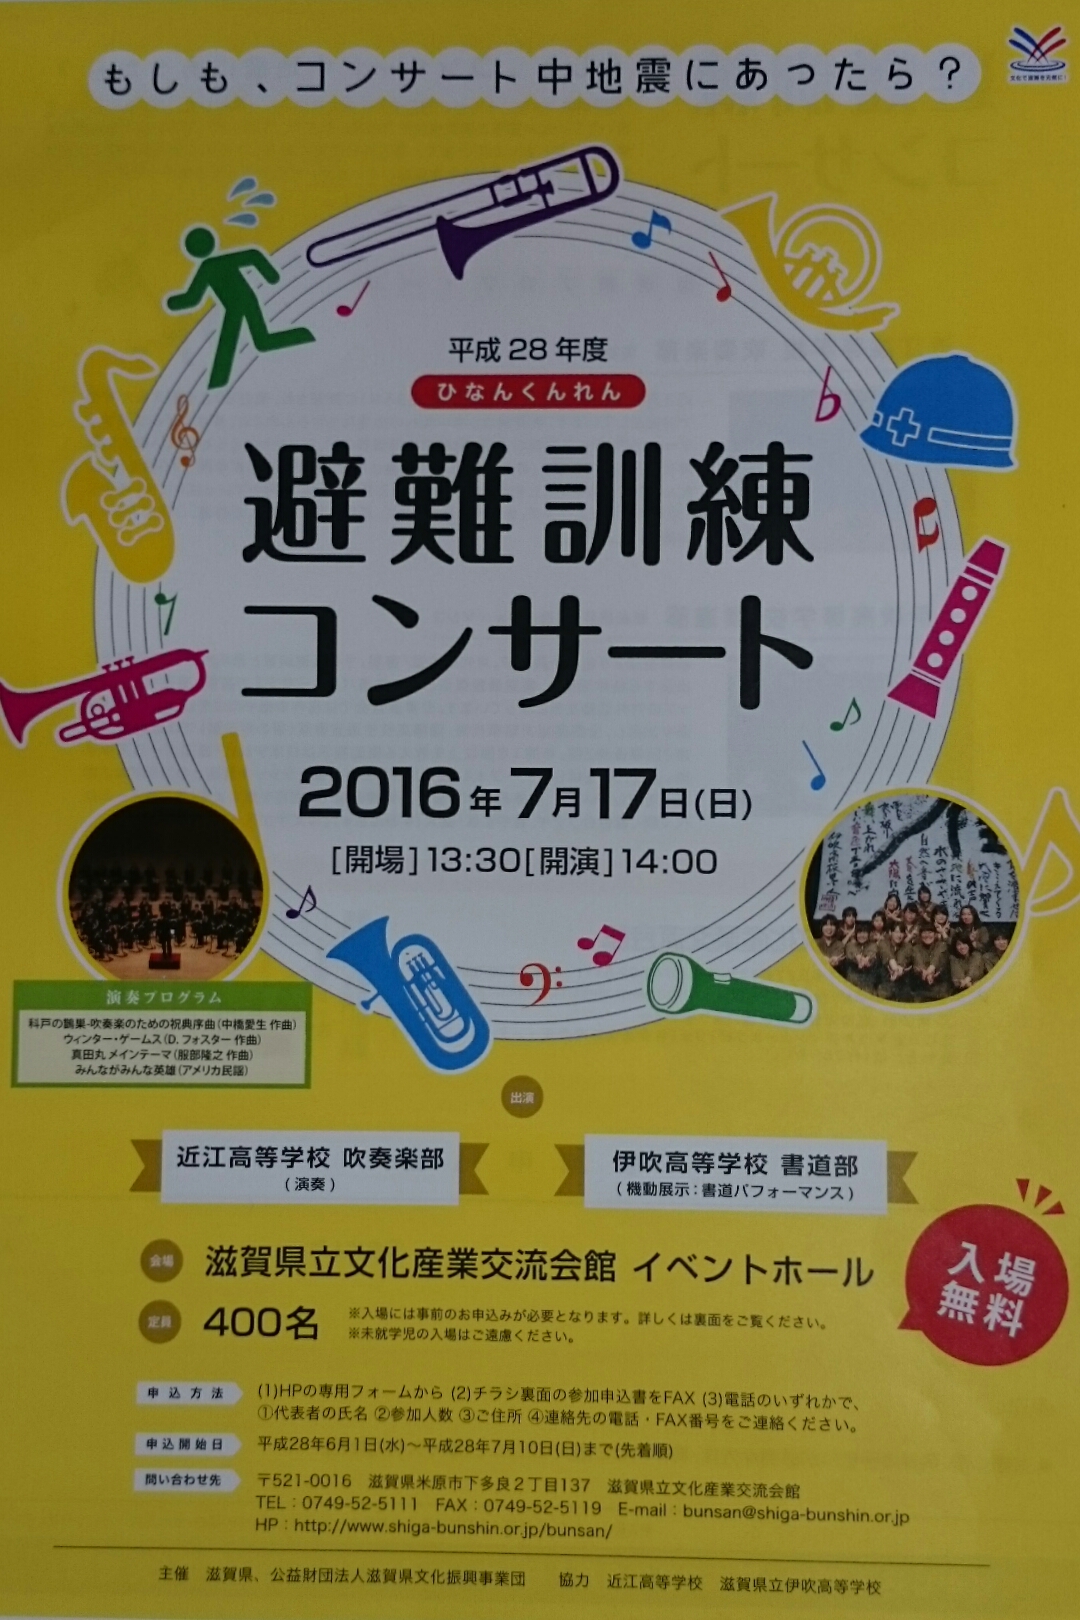 コンサート中に地震にあったら？【7月17日】入場無料の避難訓練コンサートが開催されます！！